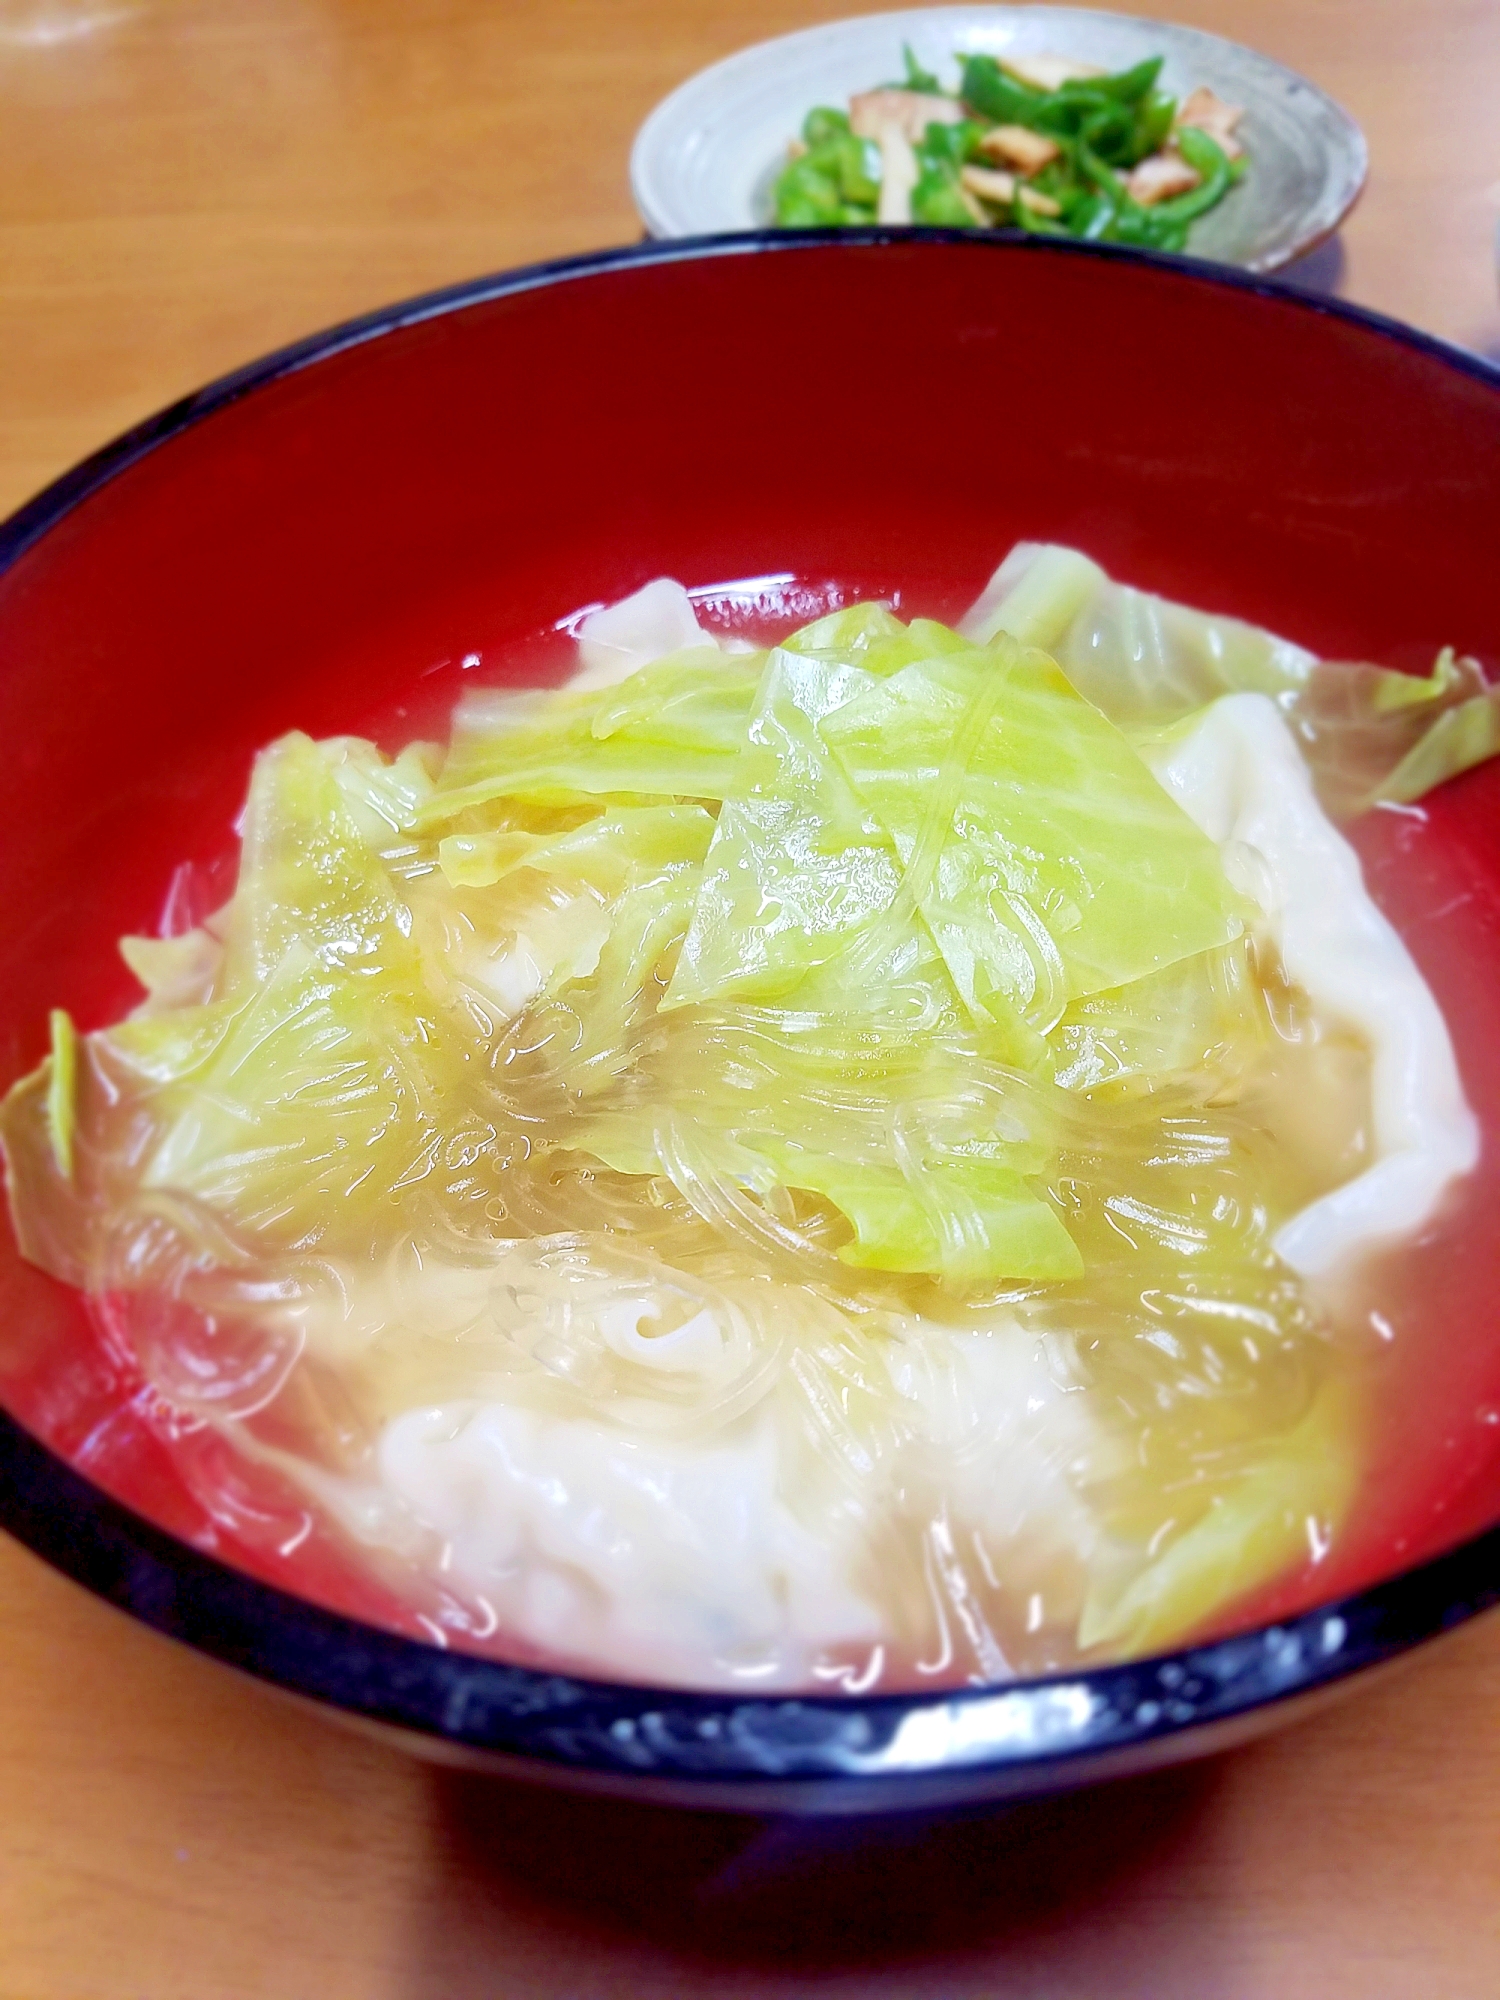 白菜と餃子の春雨スープ